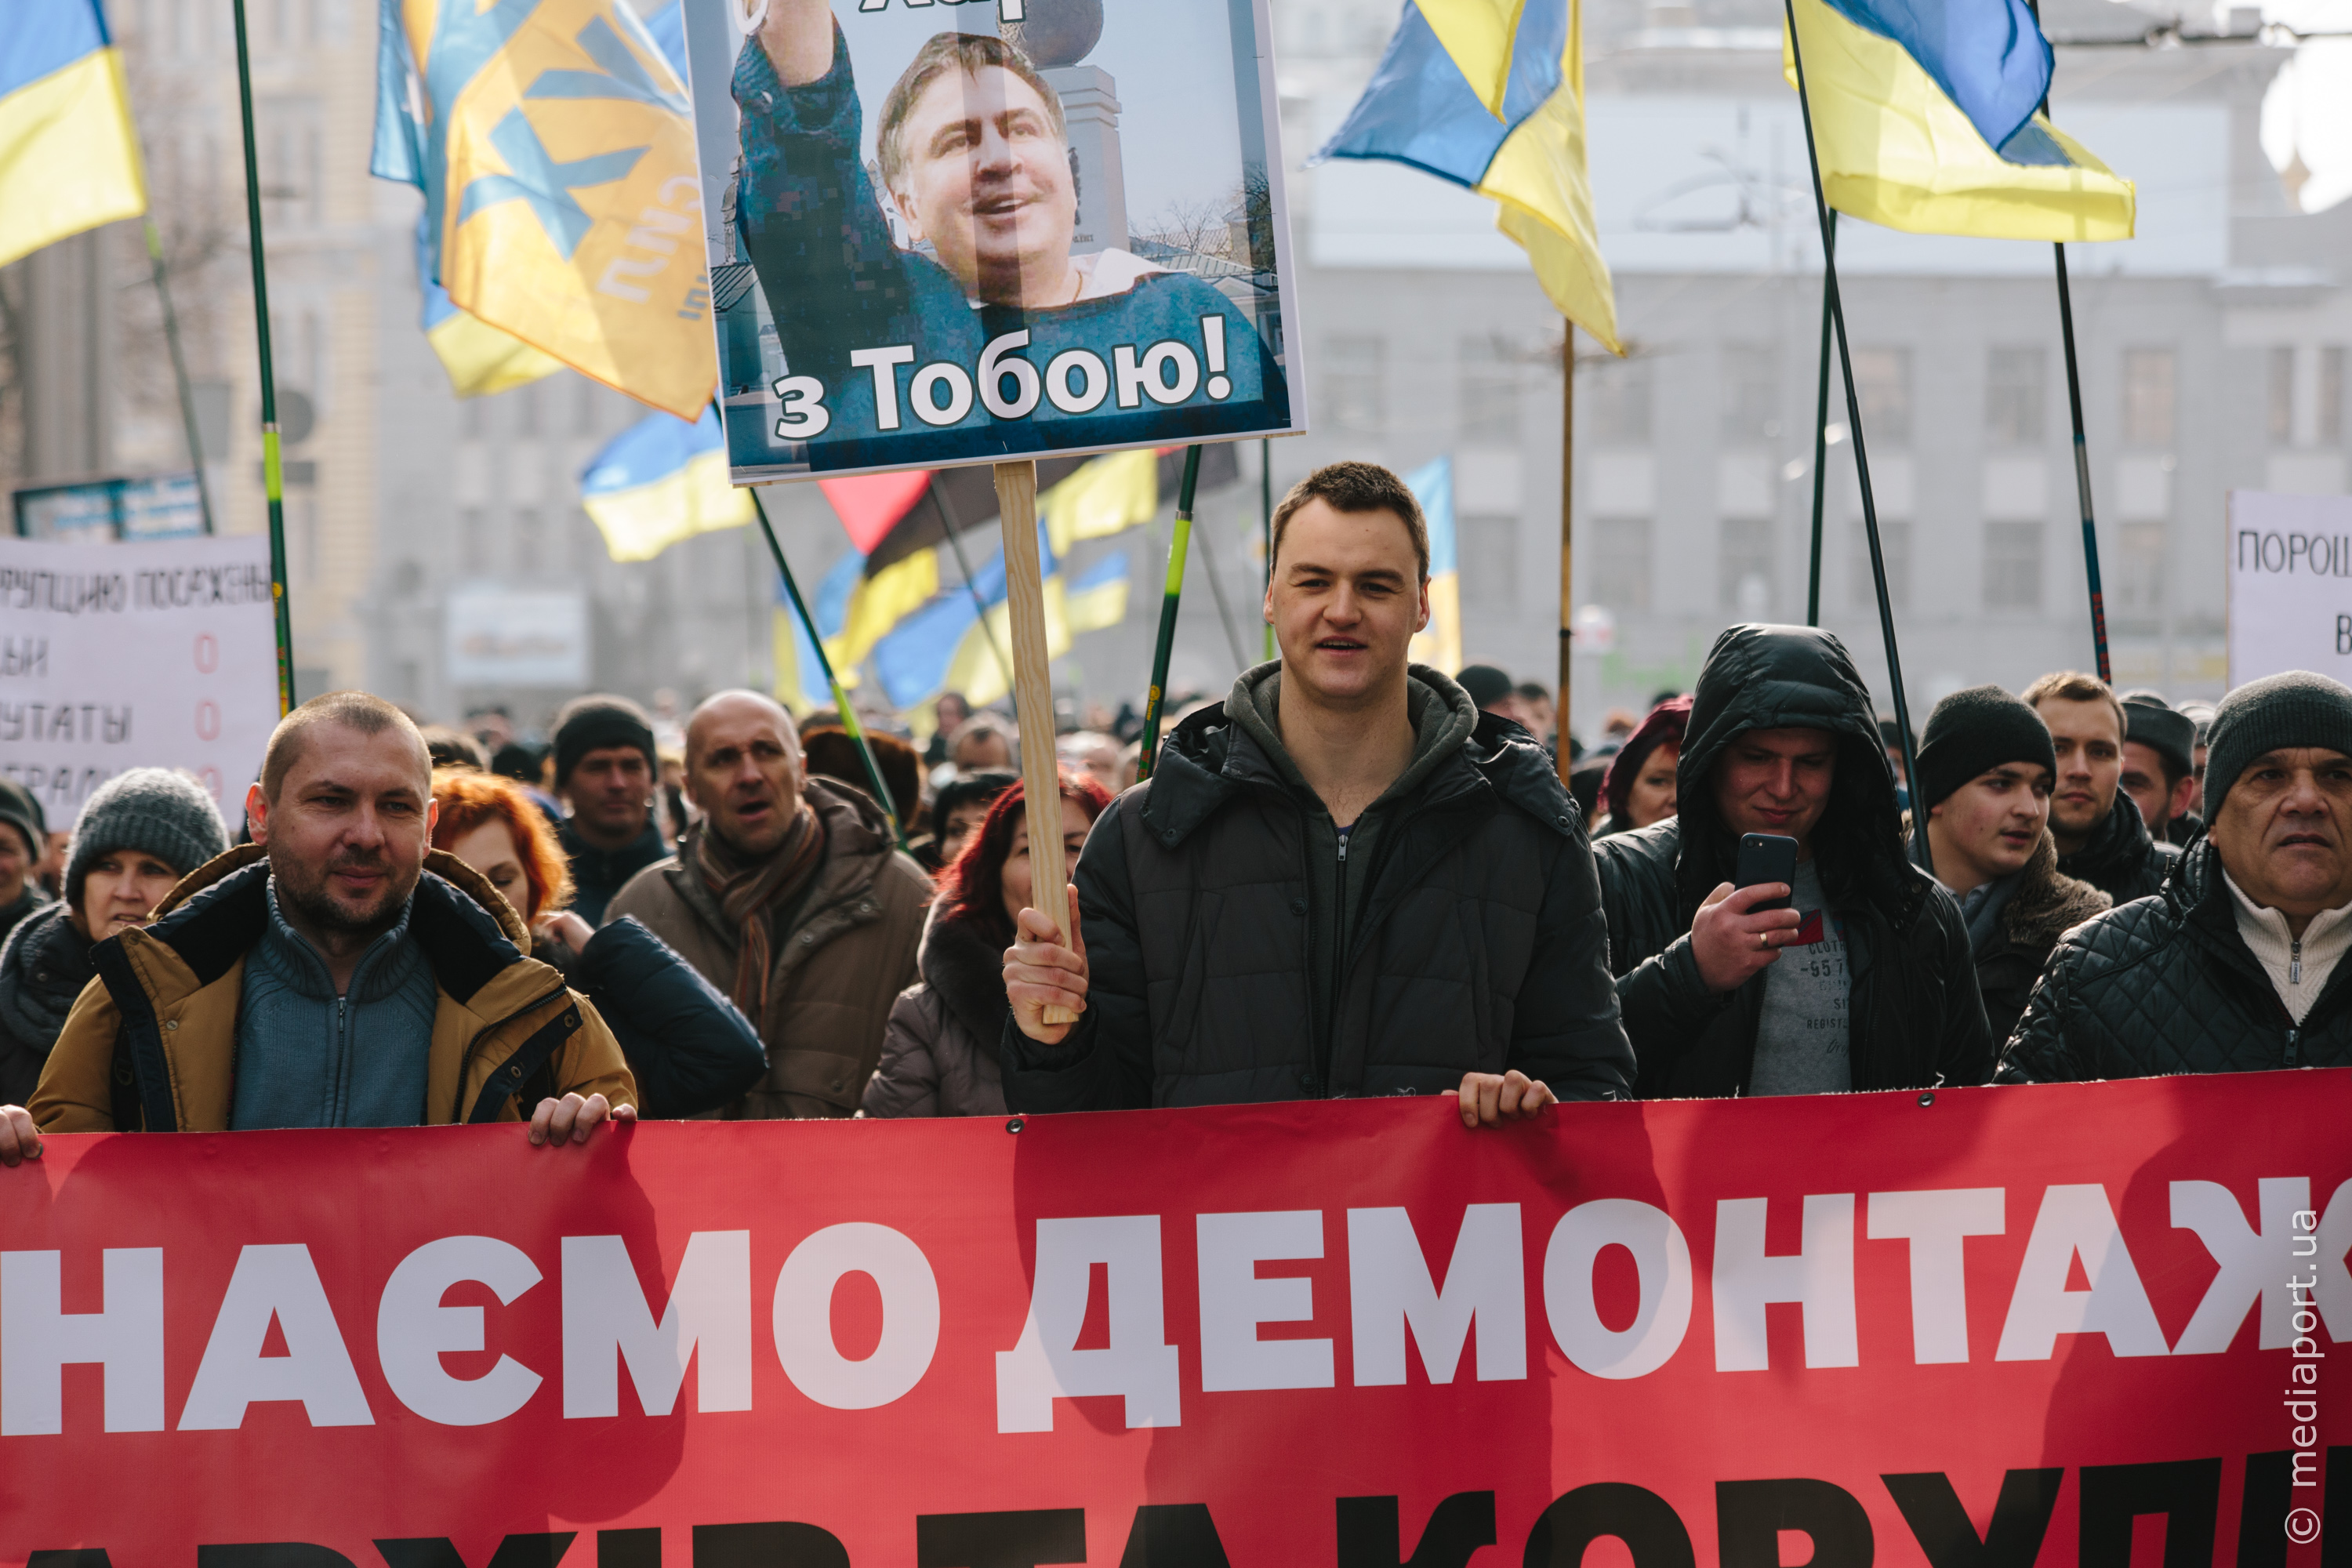 Акция сторонников Саакашвили в Харькове прошла спокойно